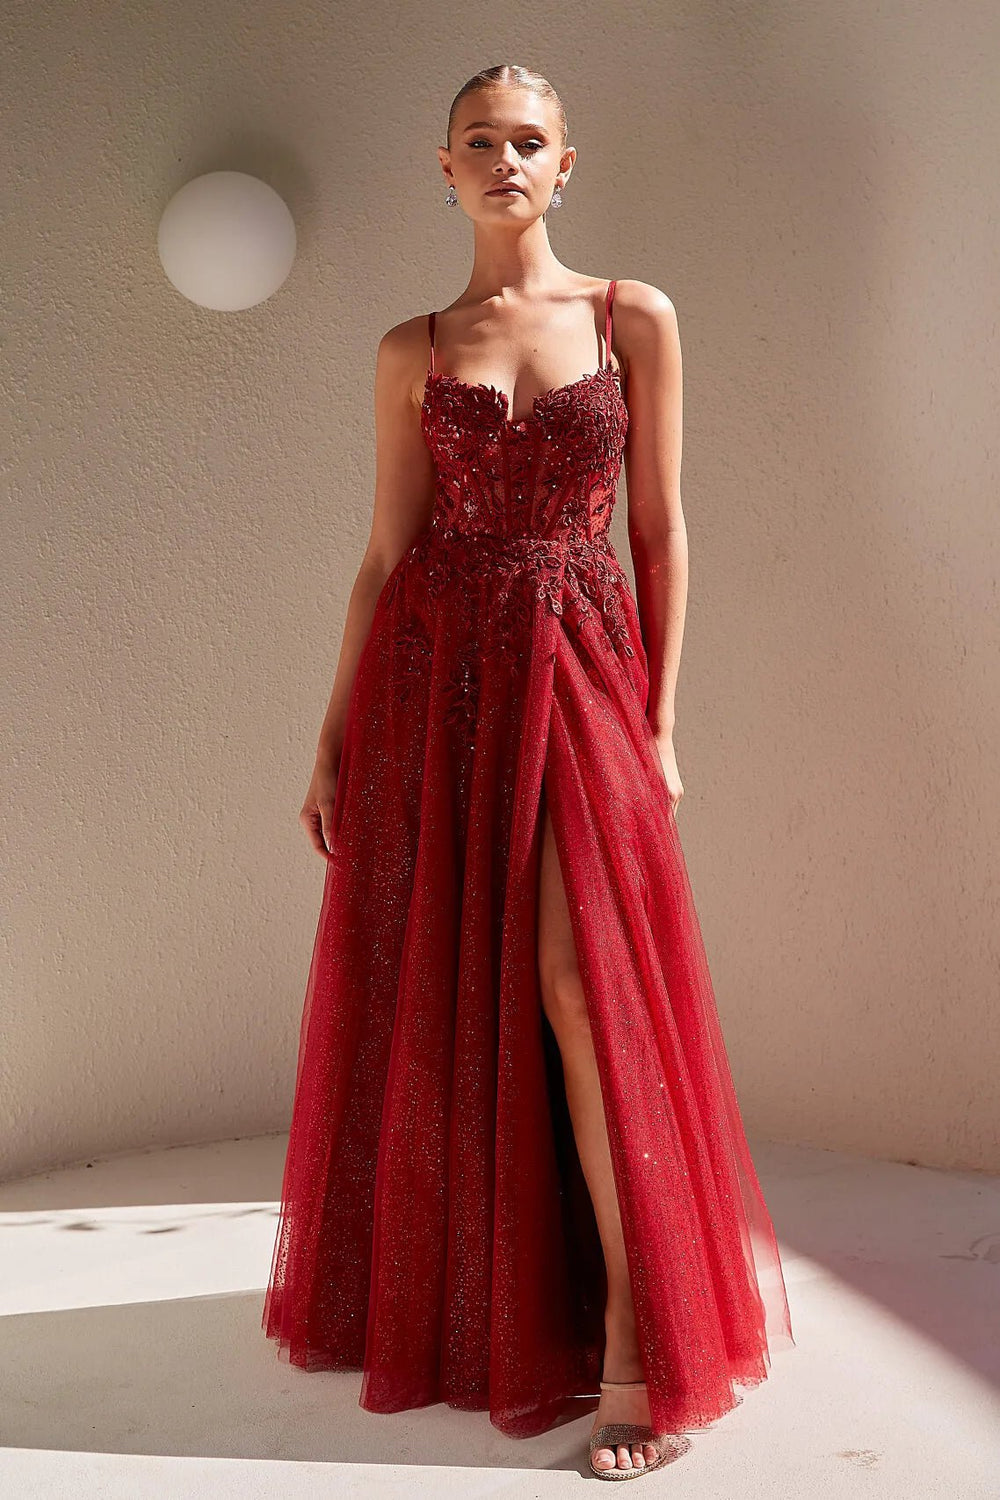 Niara Dress by Tania Olsen - ElissaJay Boutique